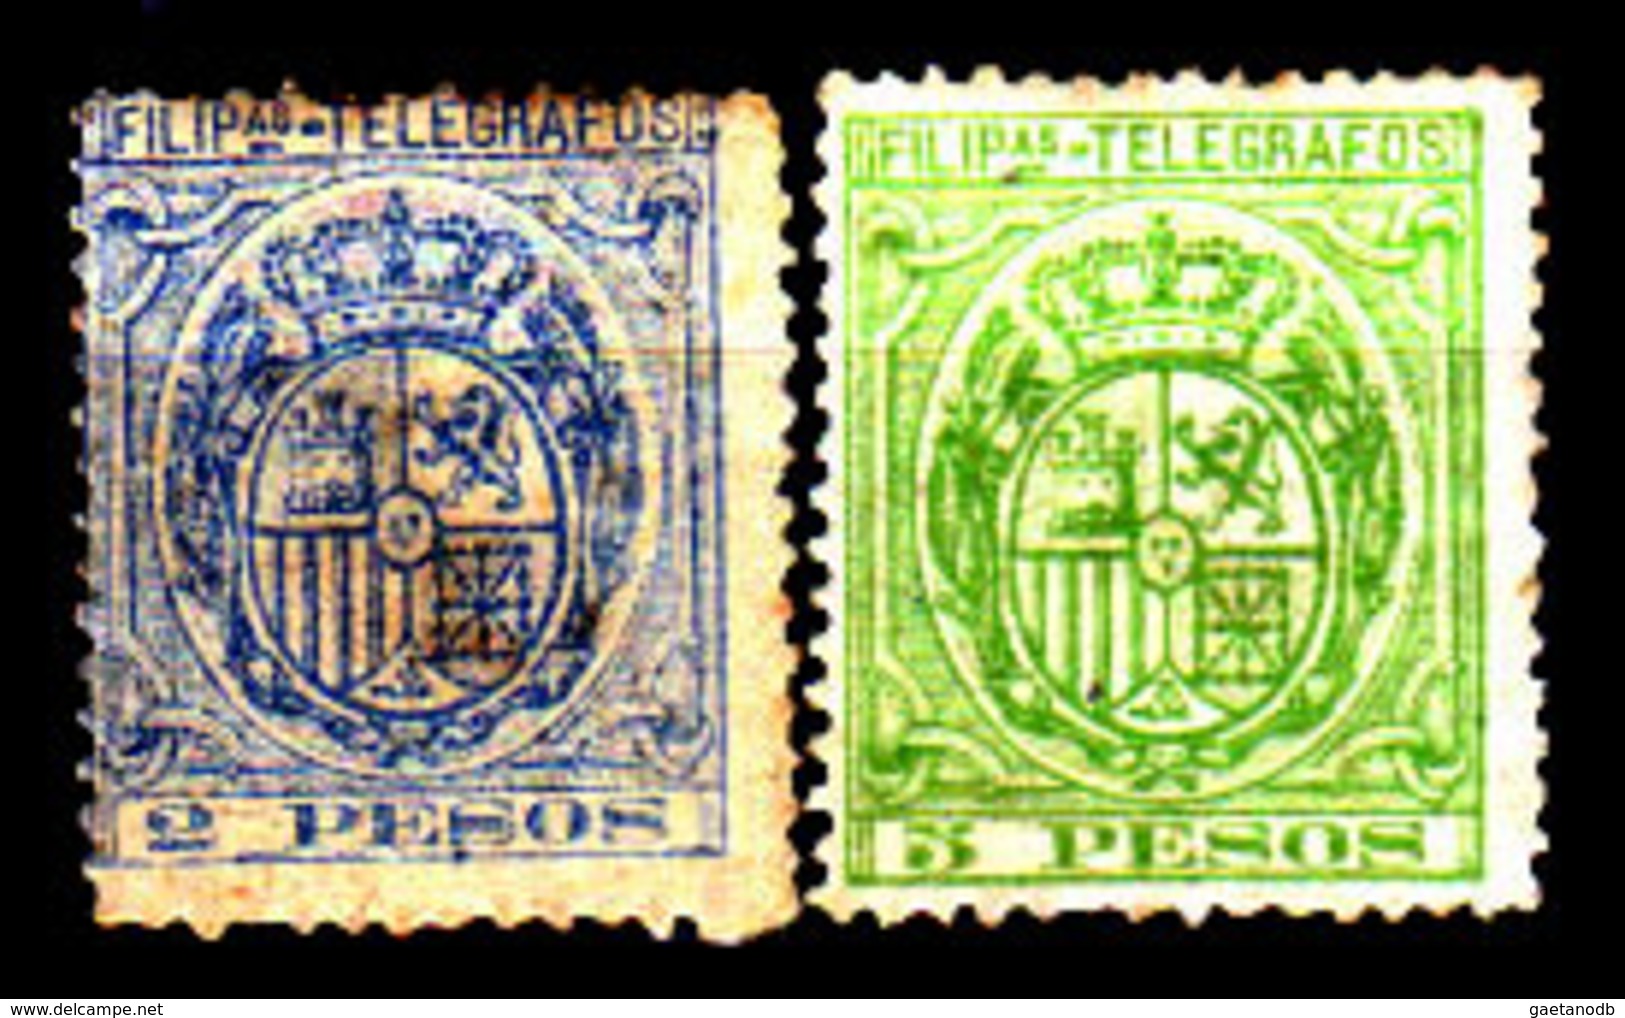 Filippine-0048 - Telegrafo 1894-95 (o/sg) Used/NG - Senza Difetti Occulti. - Philippines